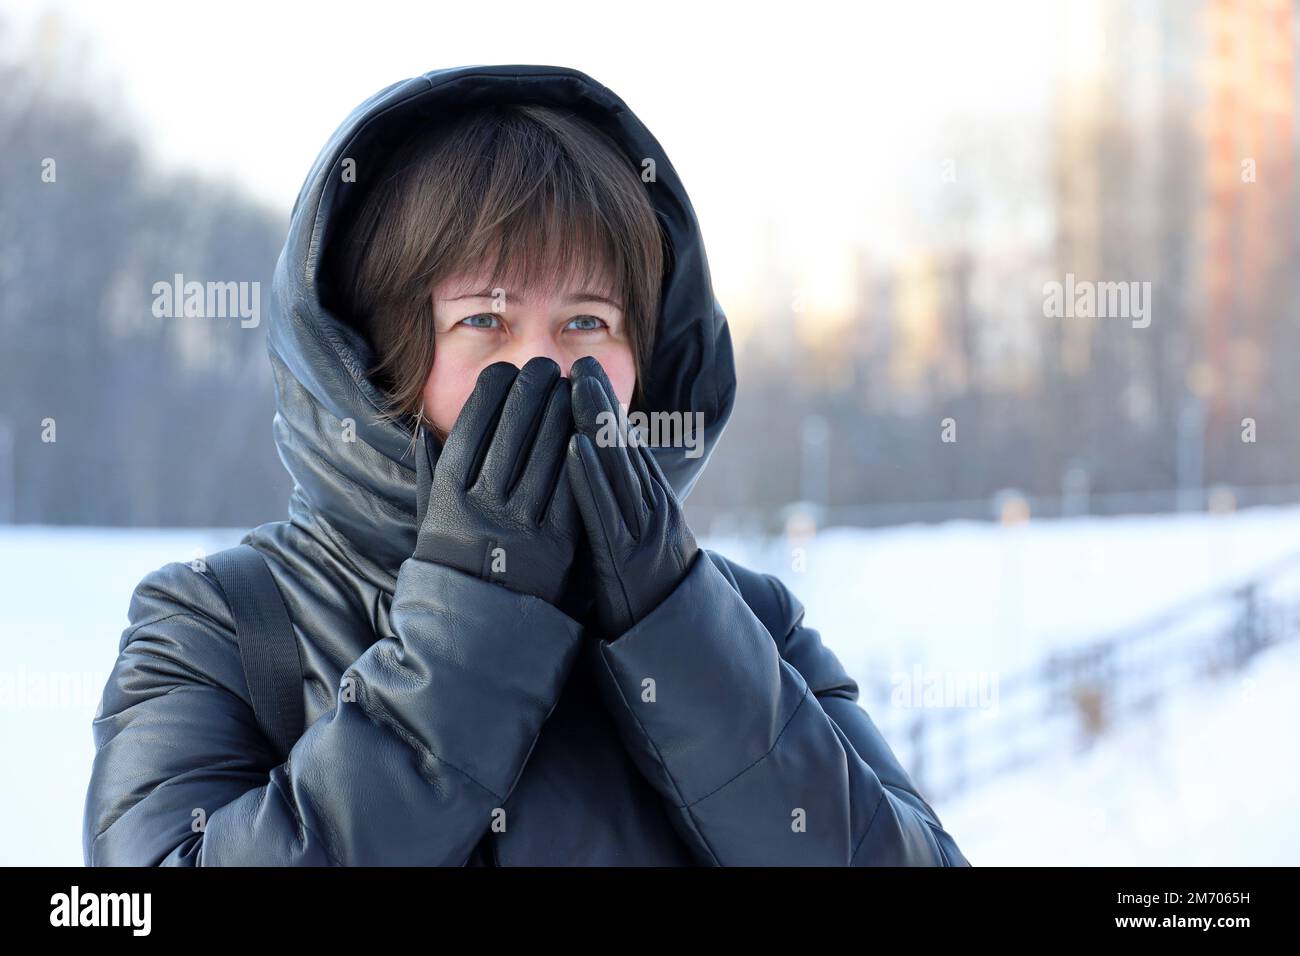 Temps de gel en hiver, femme en cuir manteau avec capuche en fourrure marchant dans une rue pendant la neige et couvrant son visage par les mains dans des gants Banque D'Images